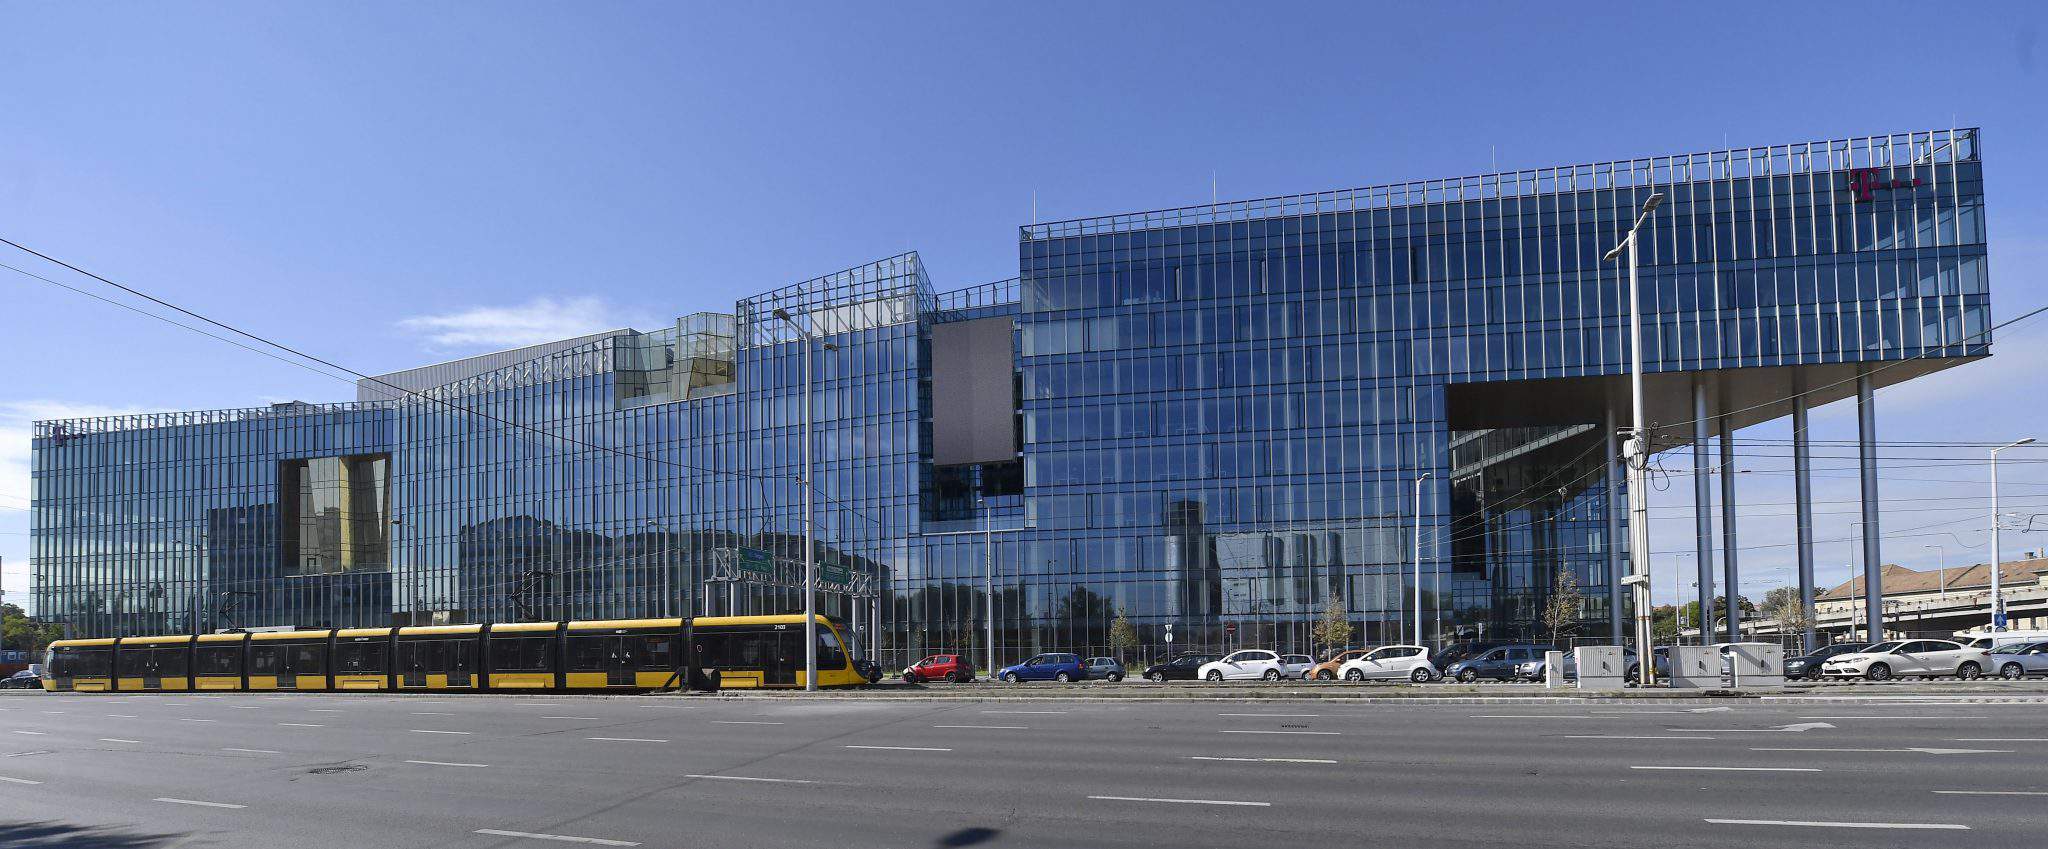 Wing anunció la finalización de la sede de Magyar Telekom y T-Systems por valor de 50 154.5 millones de florines (XNUMX millones de euros)